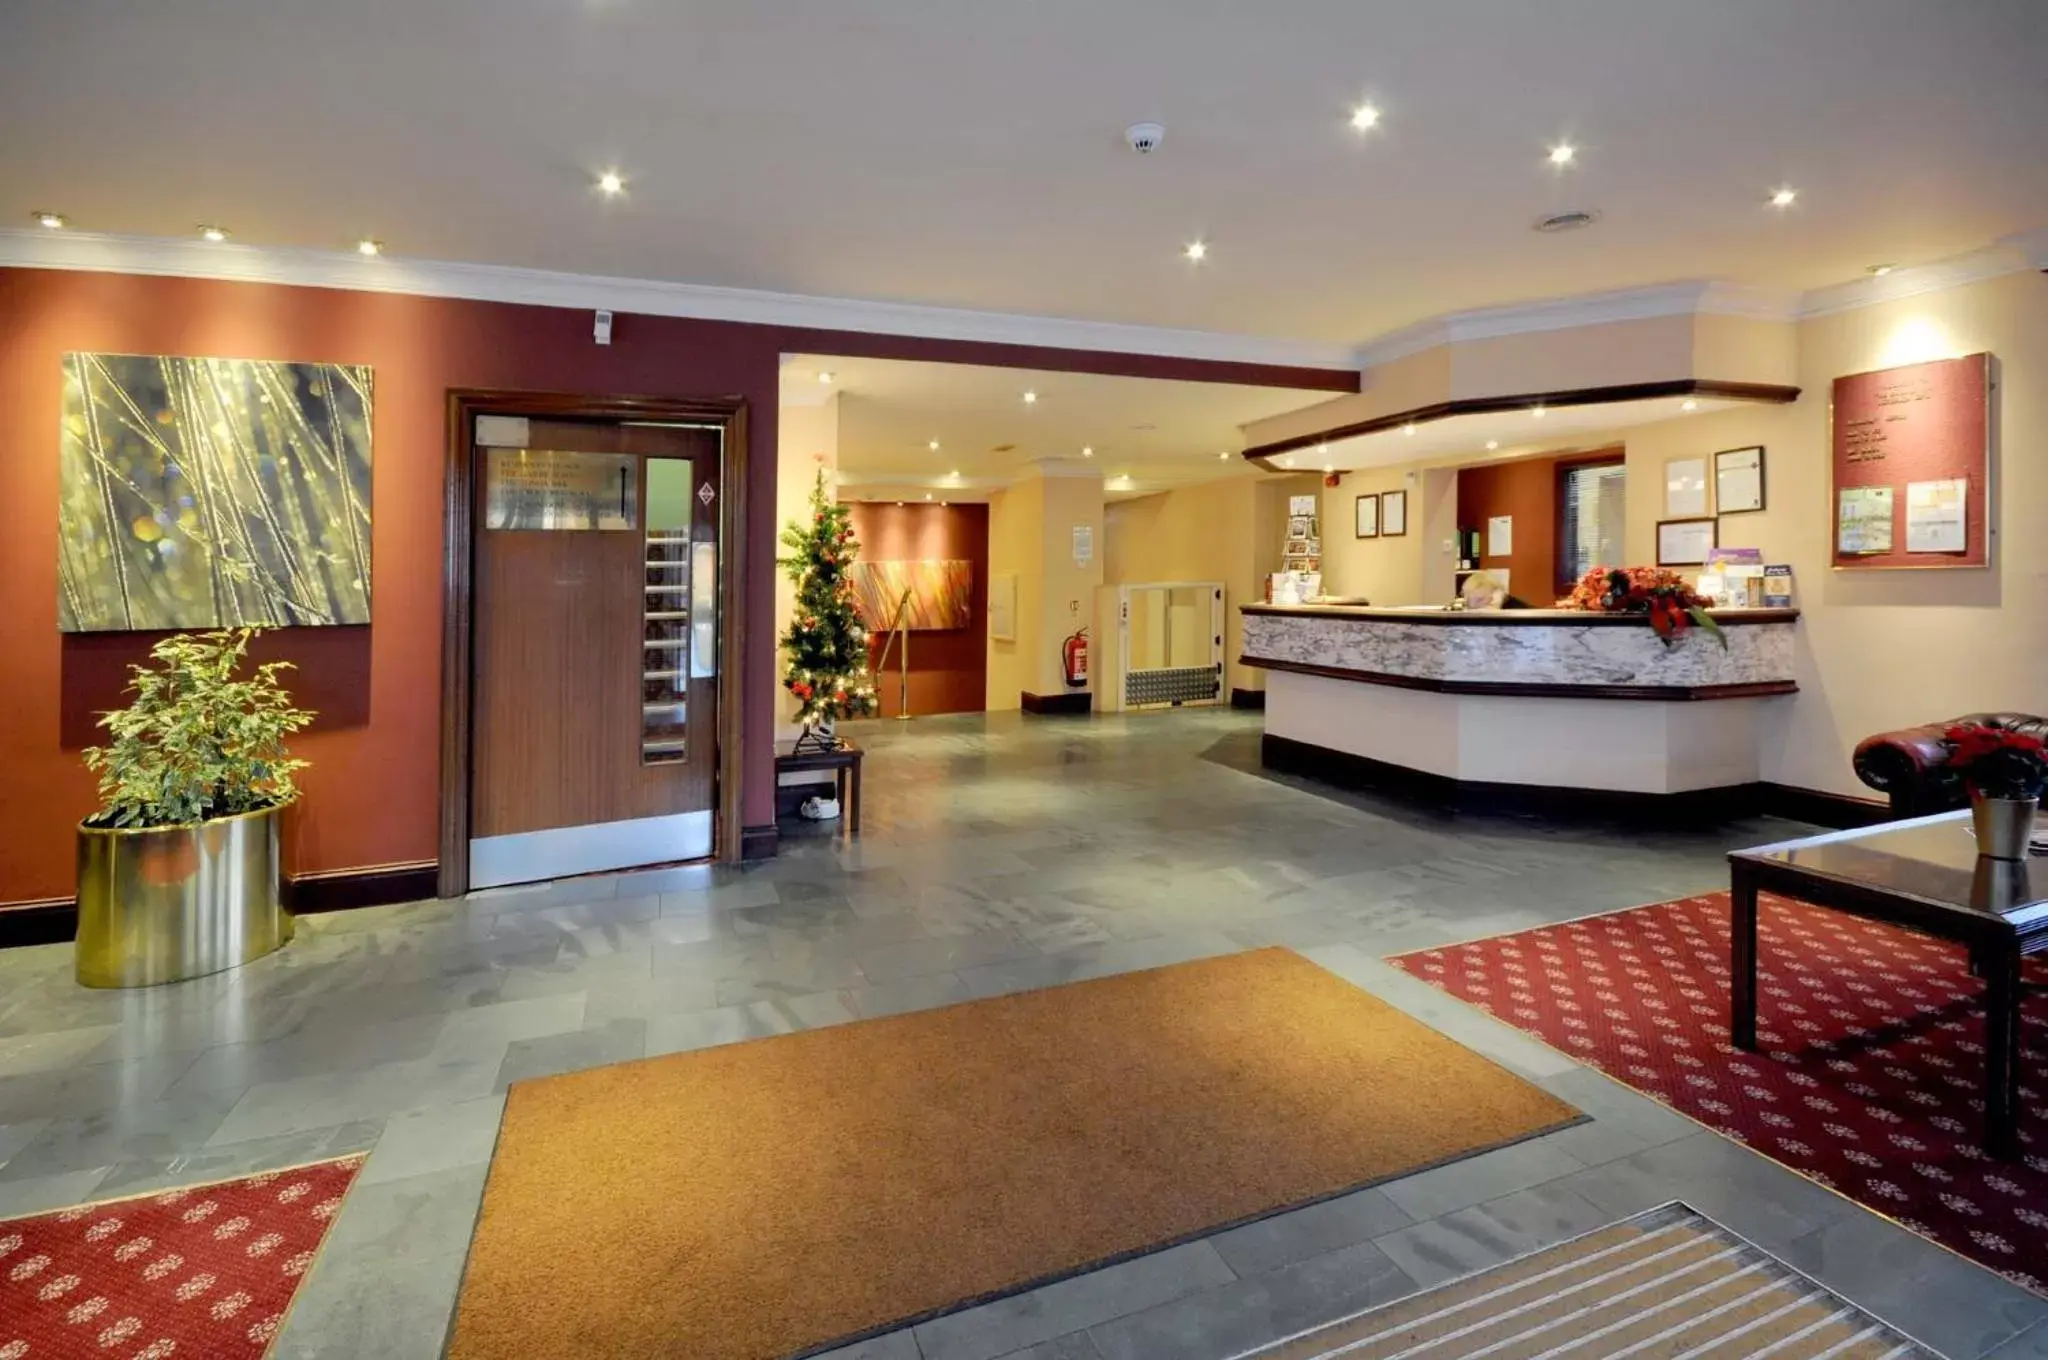 Lobby or reception, Lobby/Reception in Caladh Inn